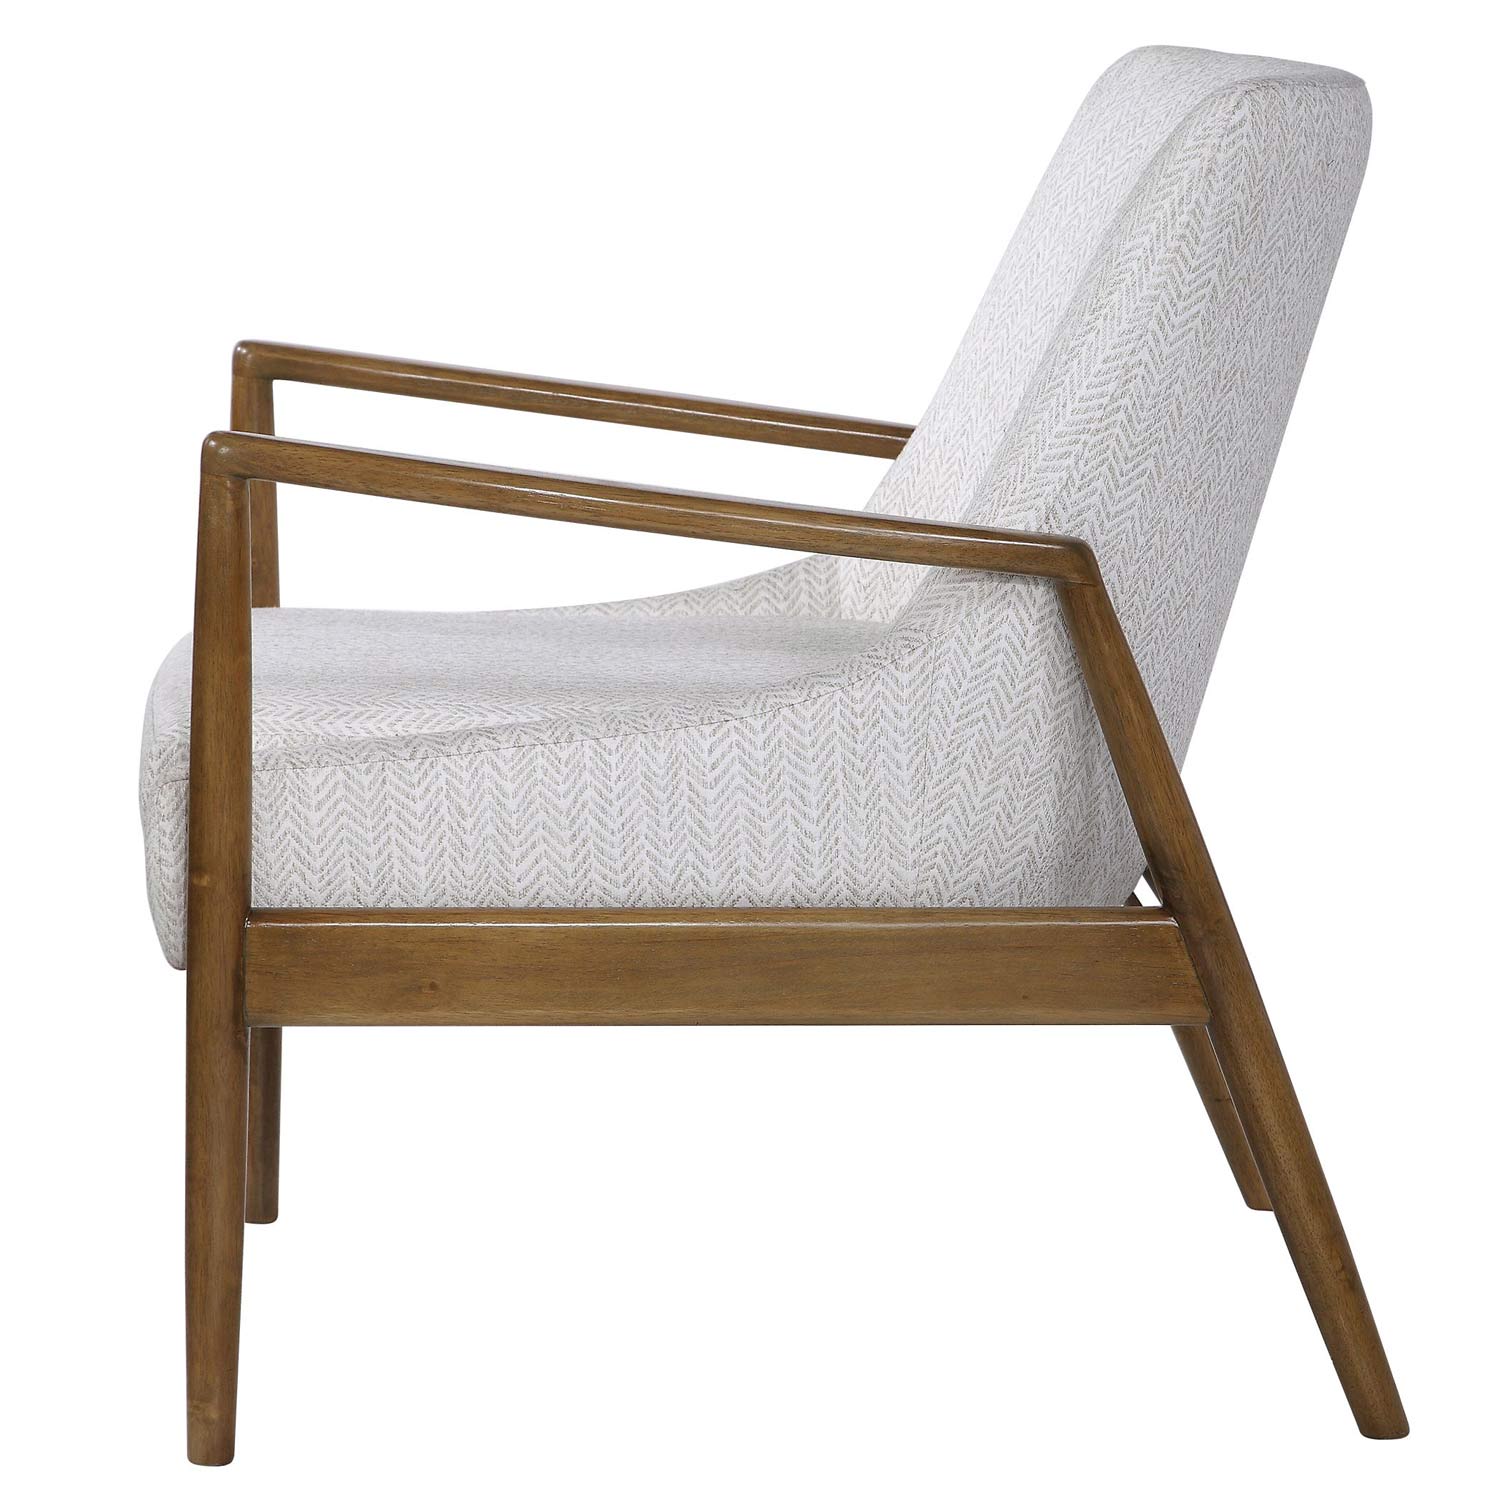 Uttermost Bev Accent Chair - White